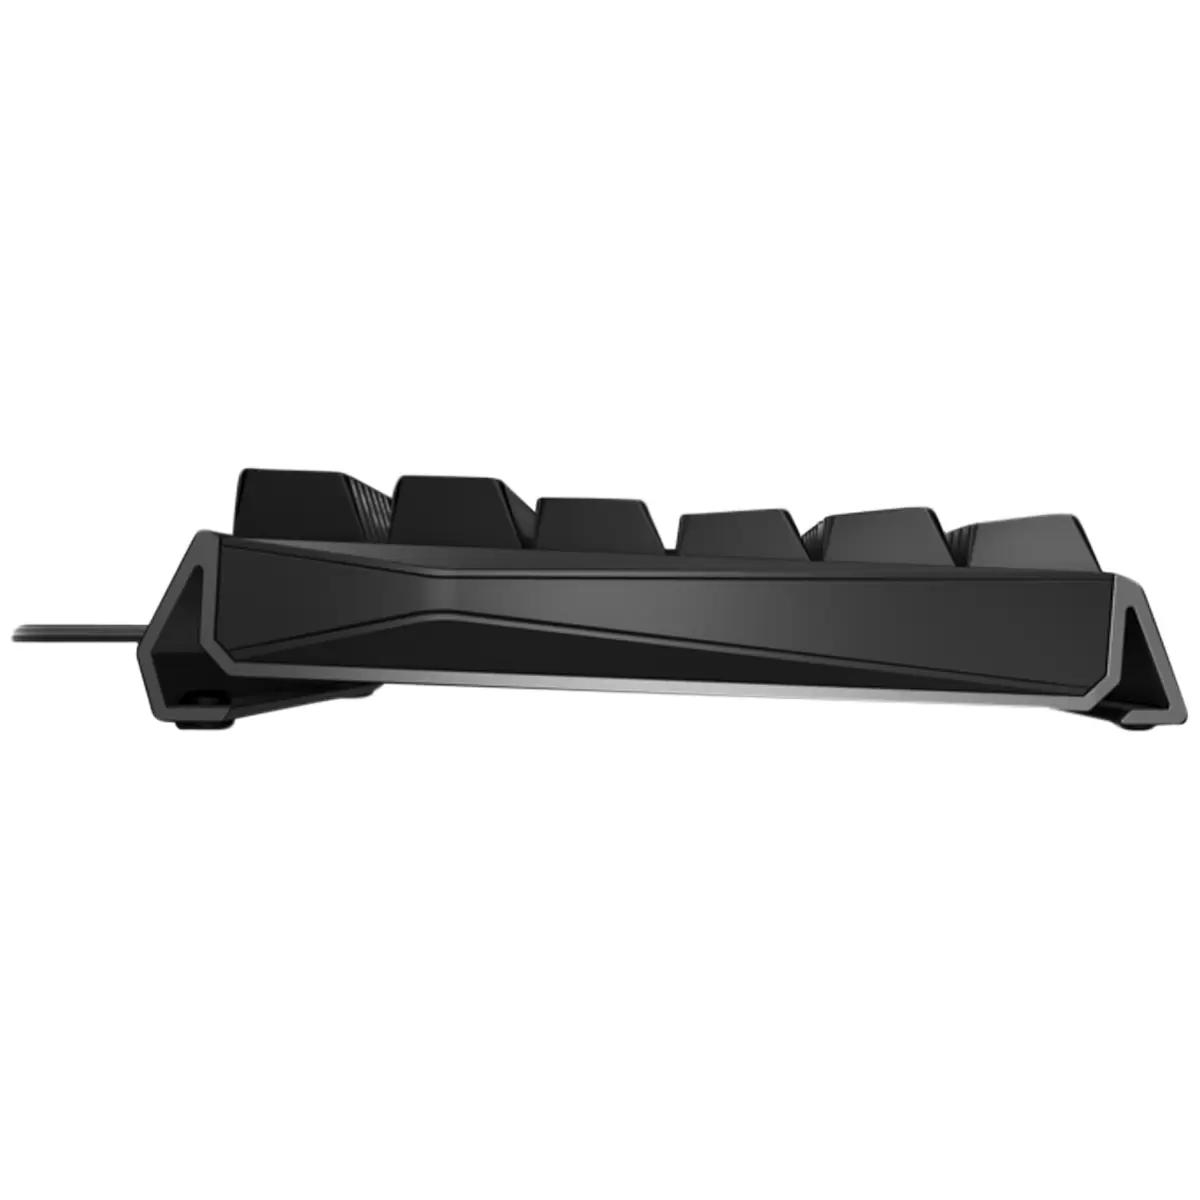 CHERRY MX 3.0S RGB Gaming Keyboard (Black)  G80-3874LXAEU-2